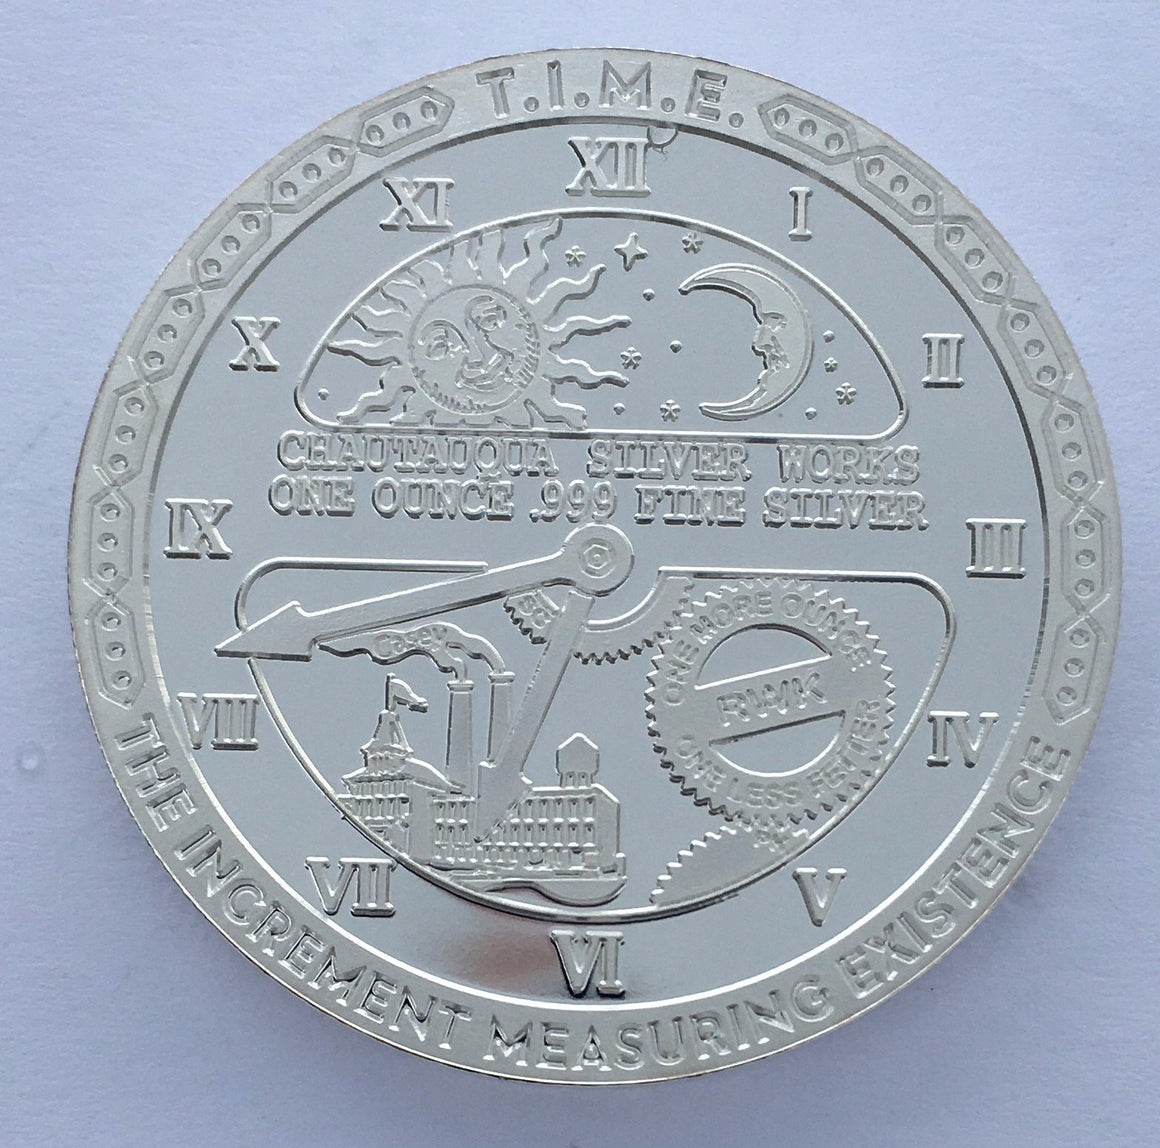 T.I.M.E.- E.M.I.T. - T.I.M.E Series by Chautauqua Silver Works, 1oz .999 Fine Silver Round